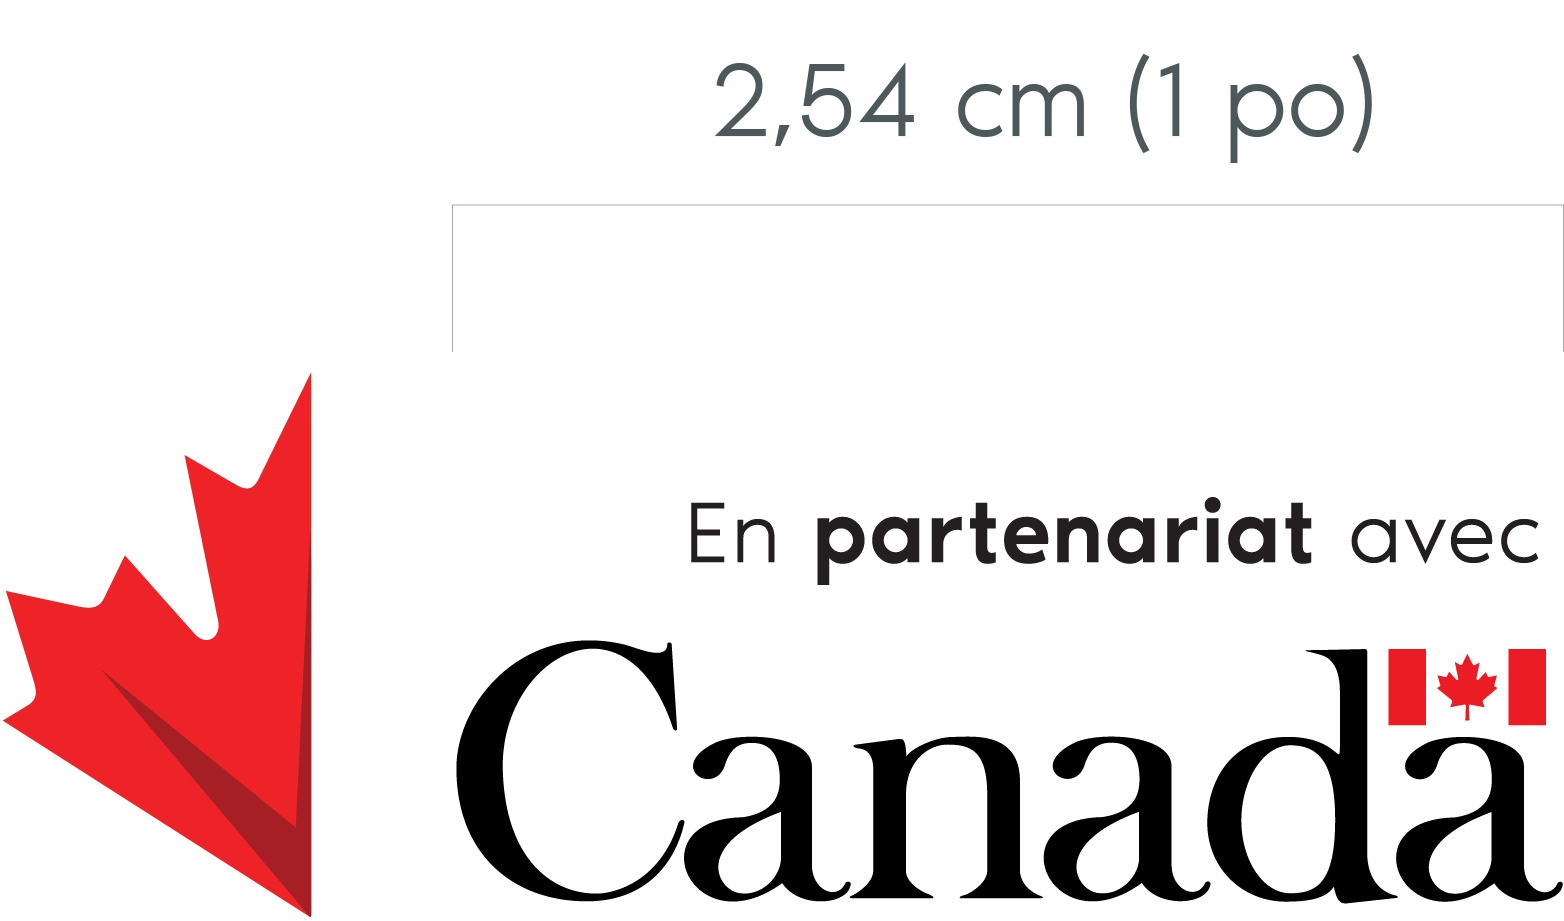 Les éléments graphiques pour les partenaires figurent au centre du graphique : la moitié d’une feuille d’érable rouge, les mots « En partenariat avec » et le mot-symbole « Canada ». Un crochet horizontal gris, au-dessus duquel est inscrit « 1” », est placé en haut du graphique et correspond à la largeur du mot-symbole « Canada ».